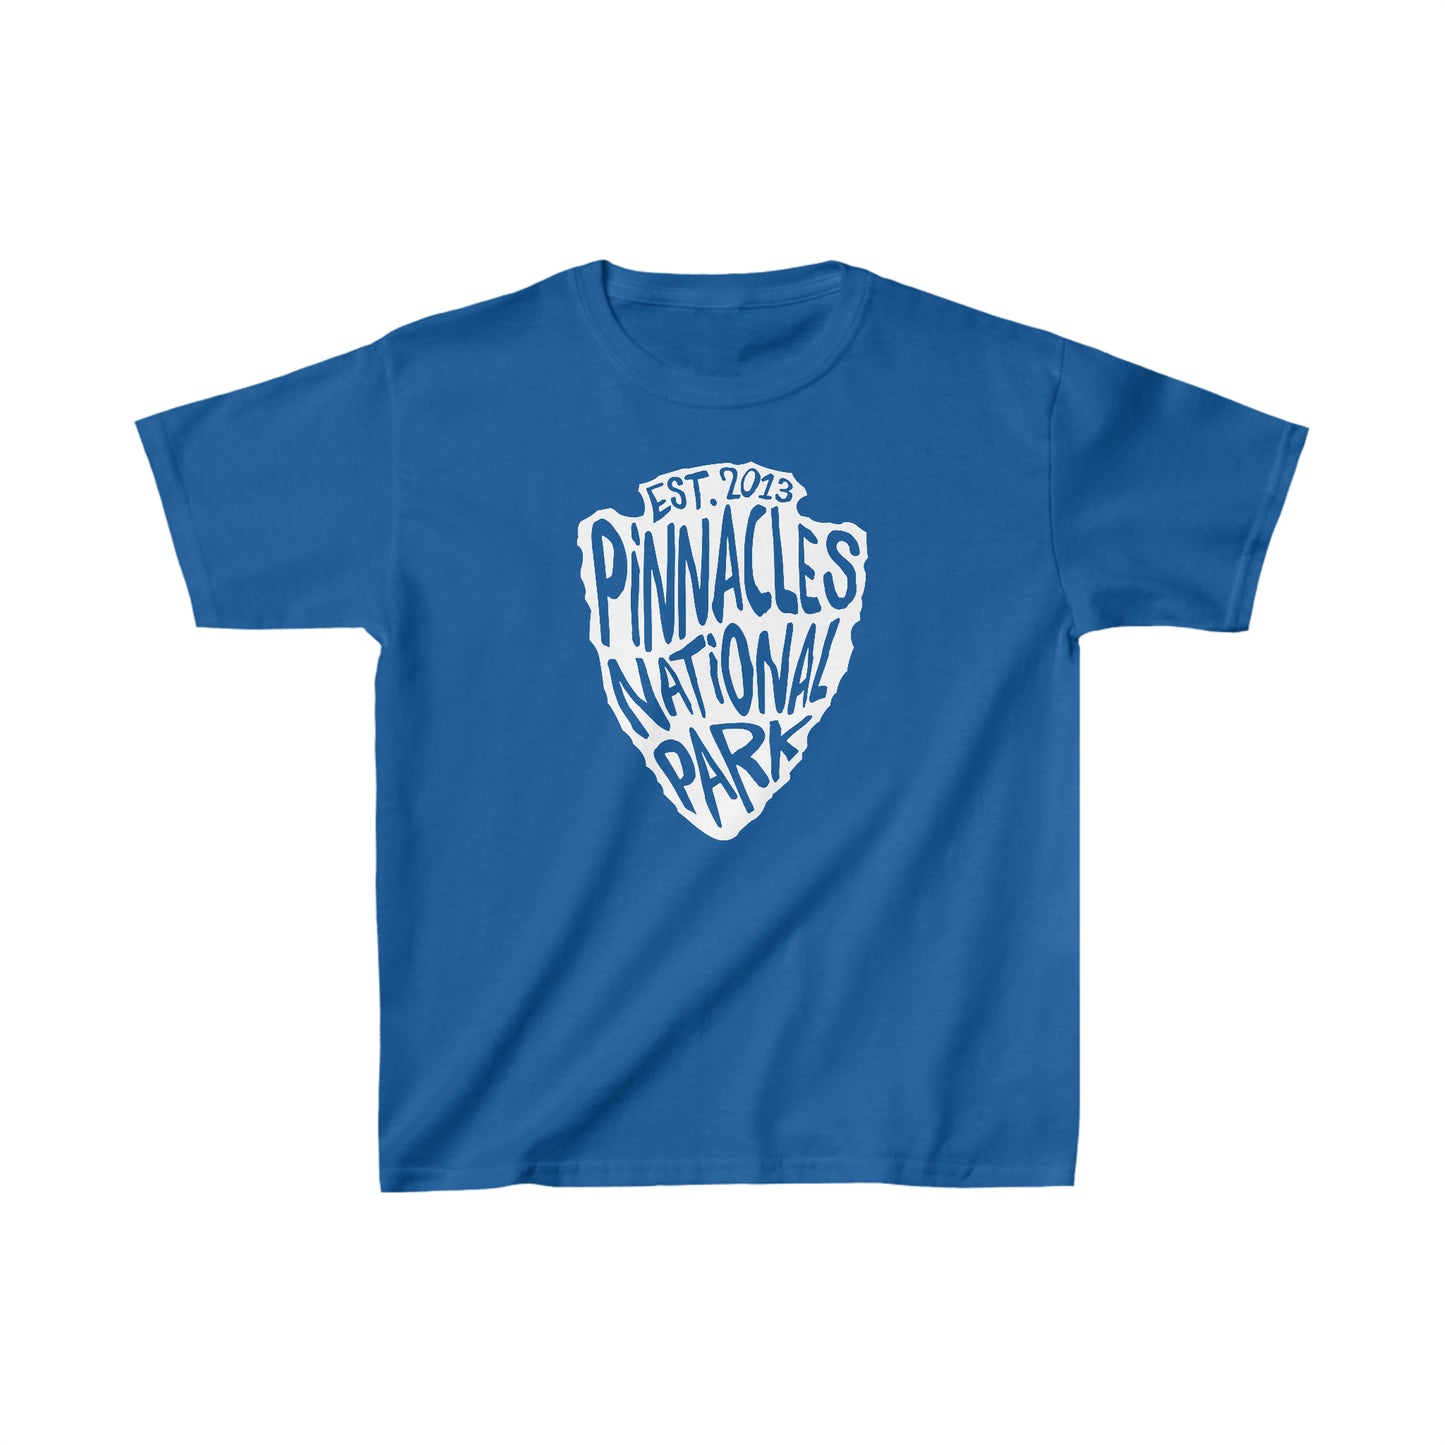 Pinnacles National Park Child T-Shirt - Arrowhead Design